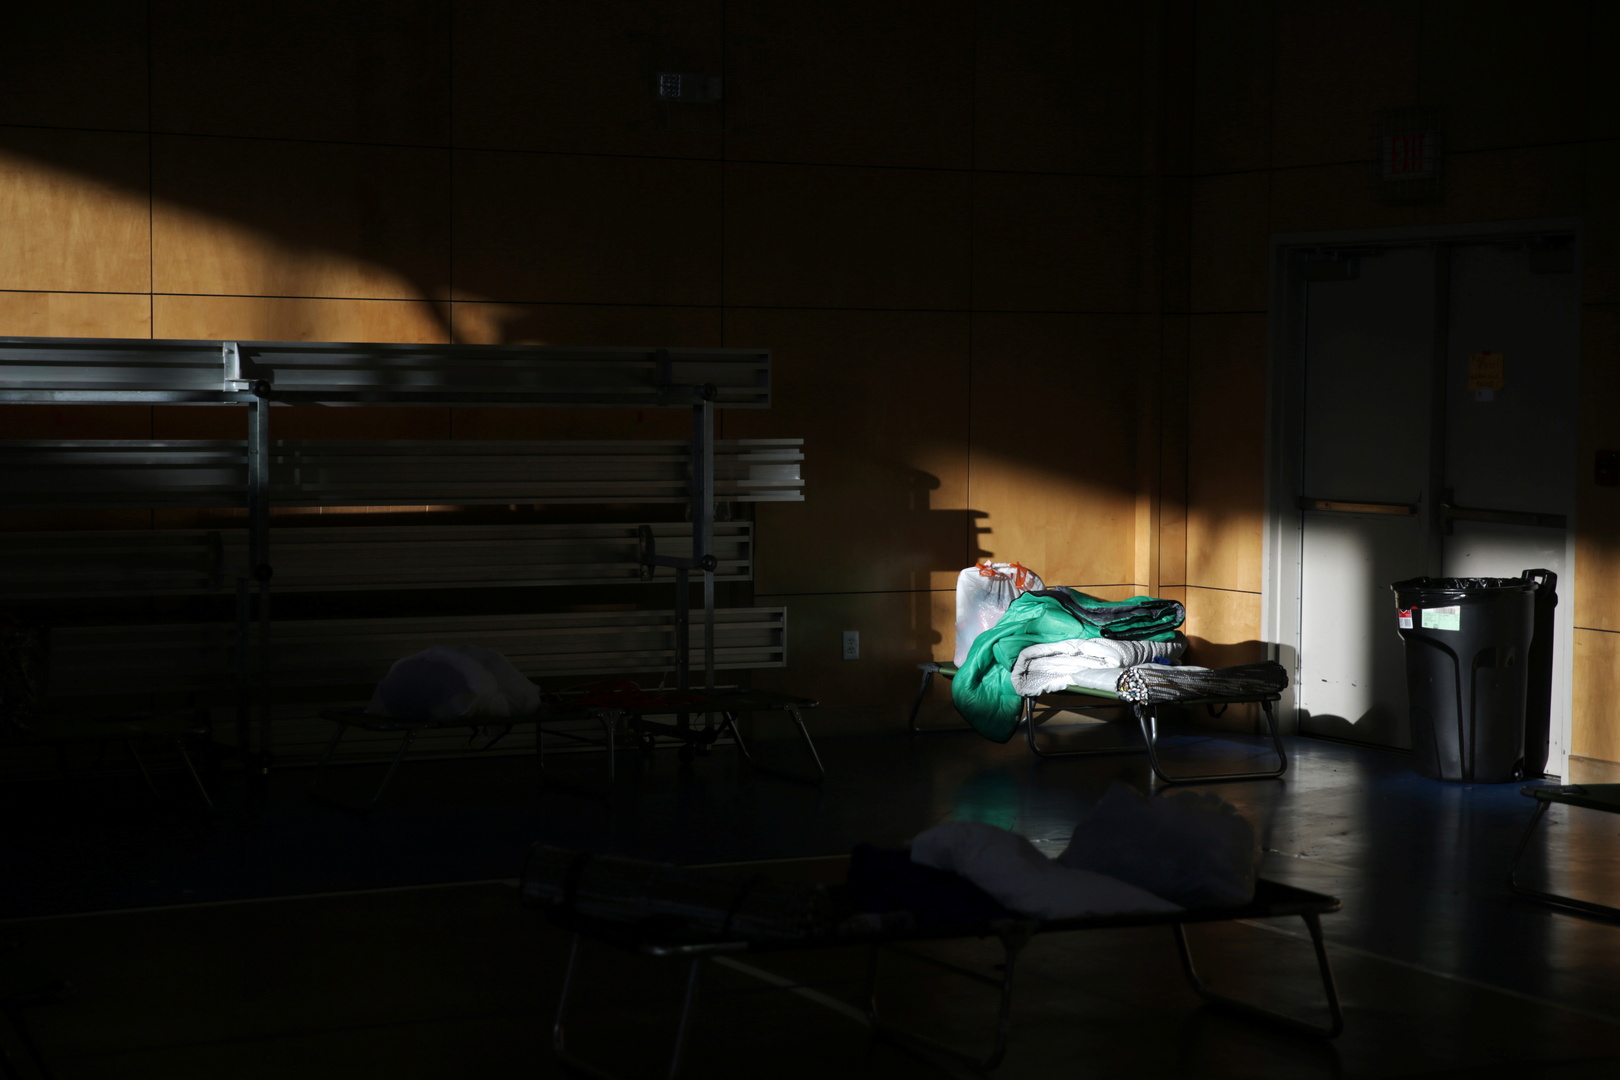 إخلاء المستشفيات في تكساس من المرضى مع استمرار انقطاع الكهرباء والمياه